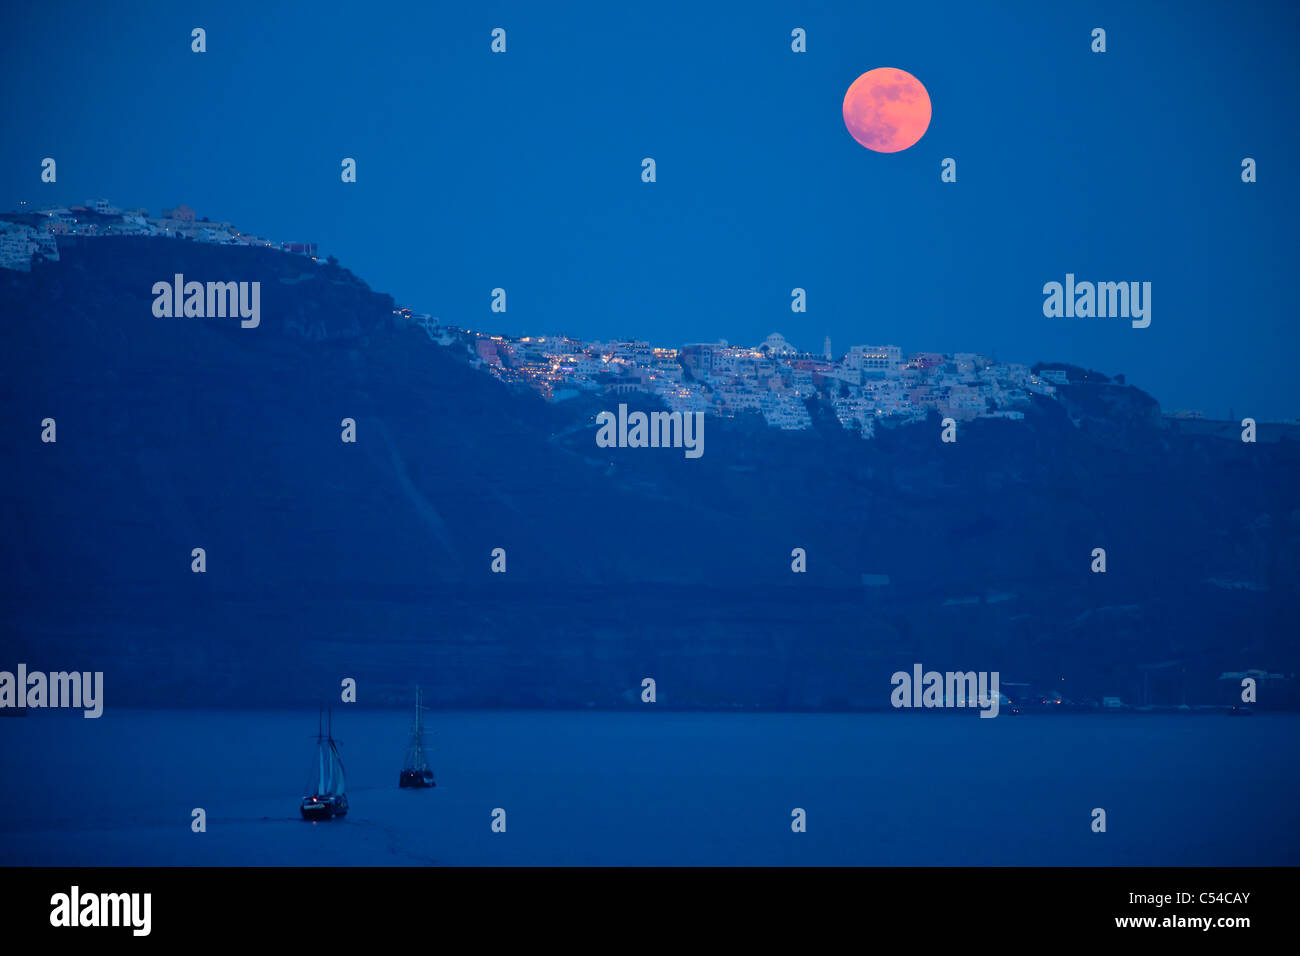 Pleine lune s'élève au-dessus de l'île de Santorin dans les Cyclades, Grèce Banque D'Images